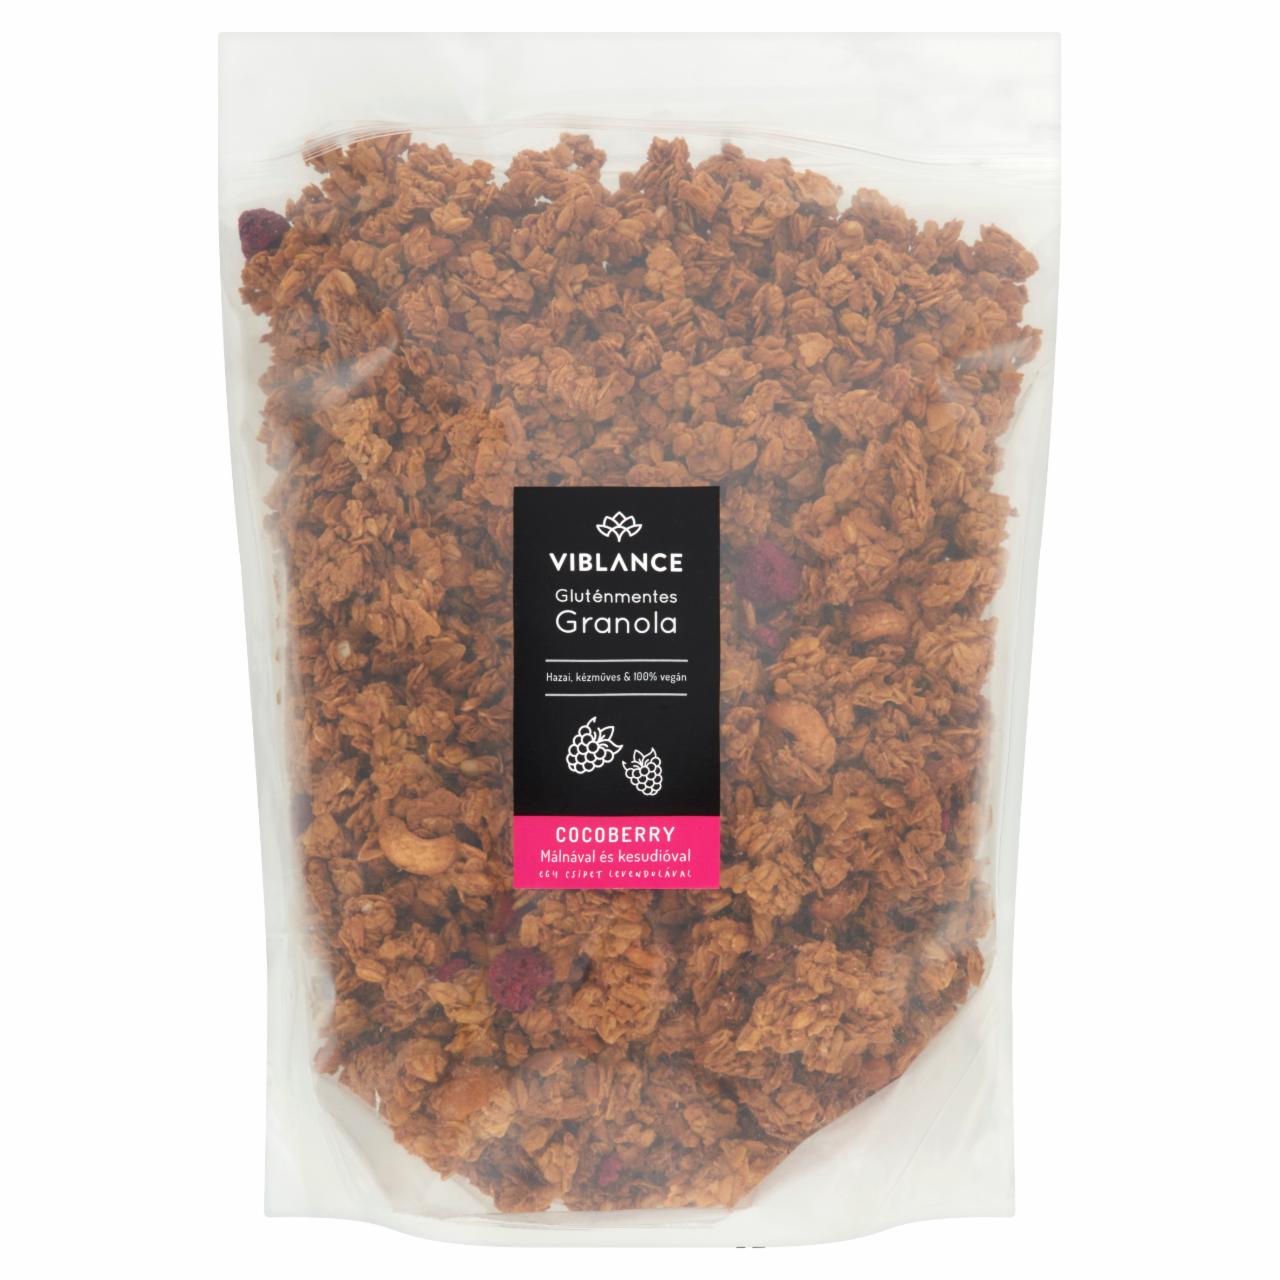 Képek - Viblance Cocoberry gluténmentes granola málnával és kesudióval, egy csipet levendulával 2000 g